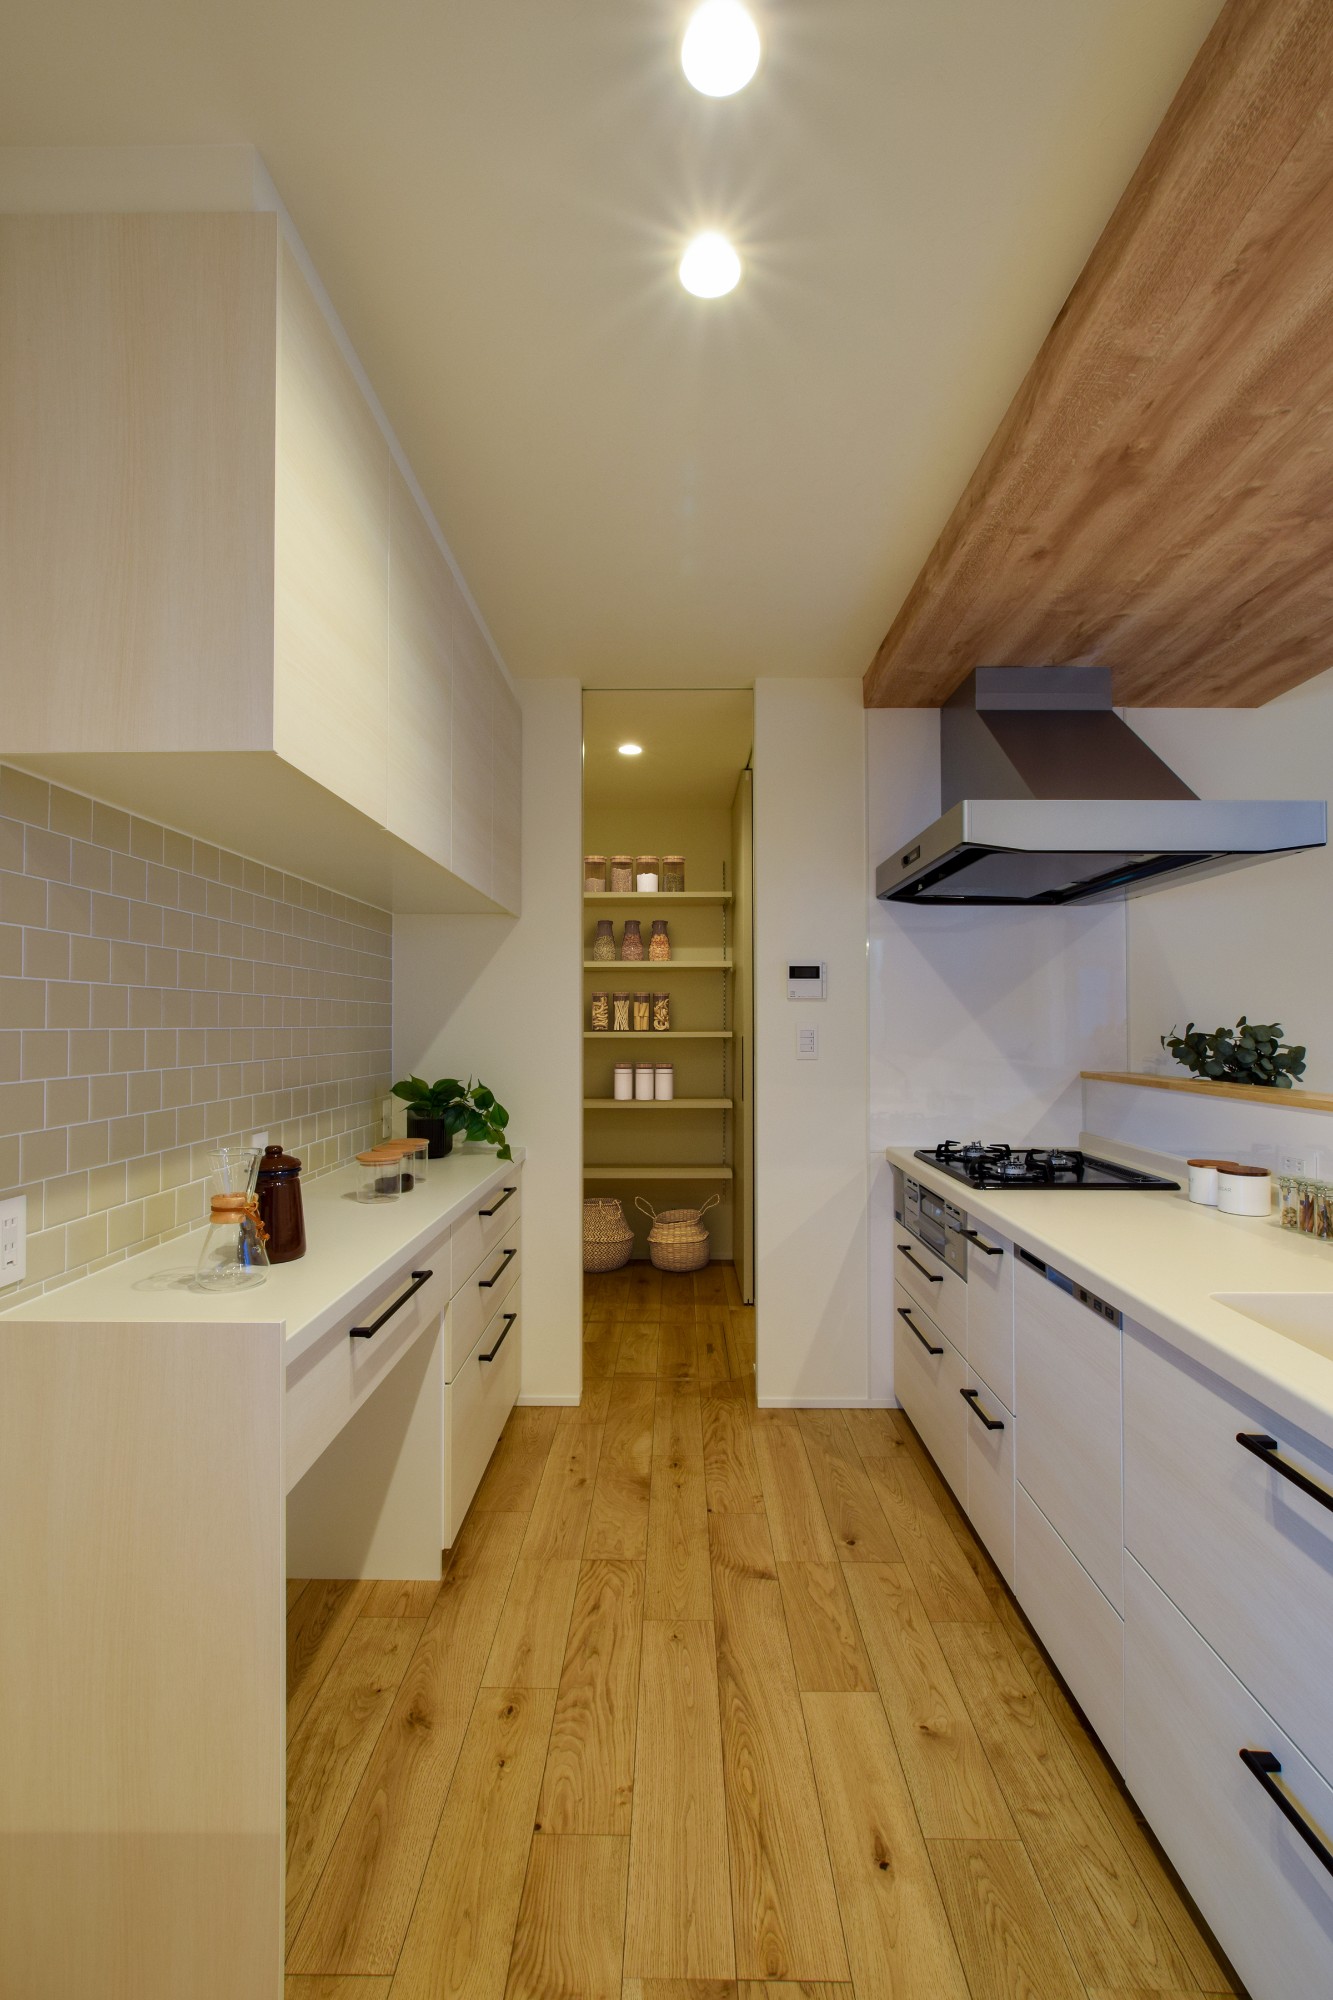 白の木目のキッチンとカップボードに、アイボリーのタイルがアクセントになった明るいキッチン。キッチンとカップボードの距離を十分に確保し、2人並んでもゆったりと作業ができる